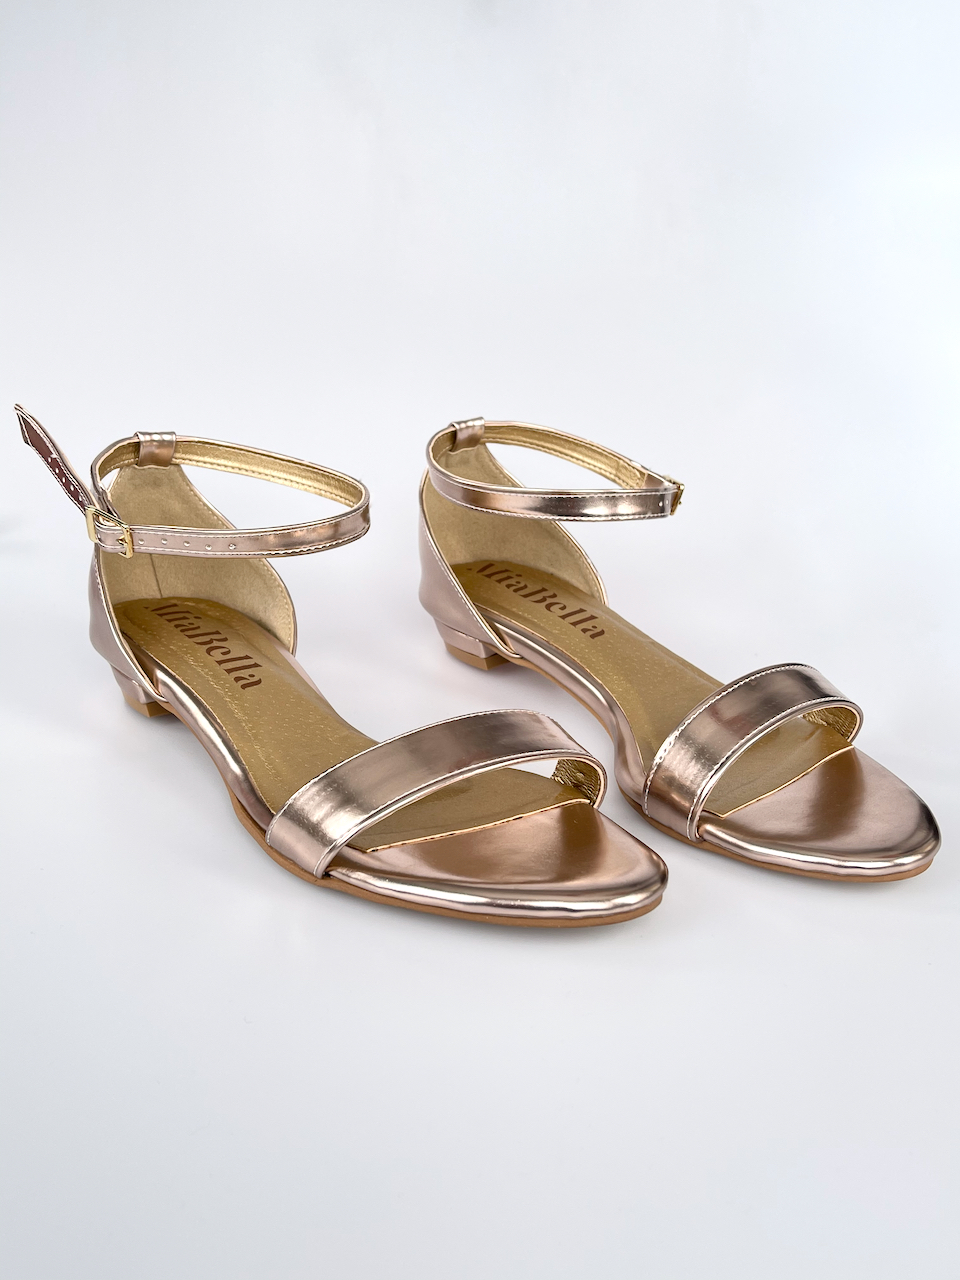 Rose-gold sandálky bez podpatků 32 - stélka 19,5cm / obvod 18,5cm